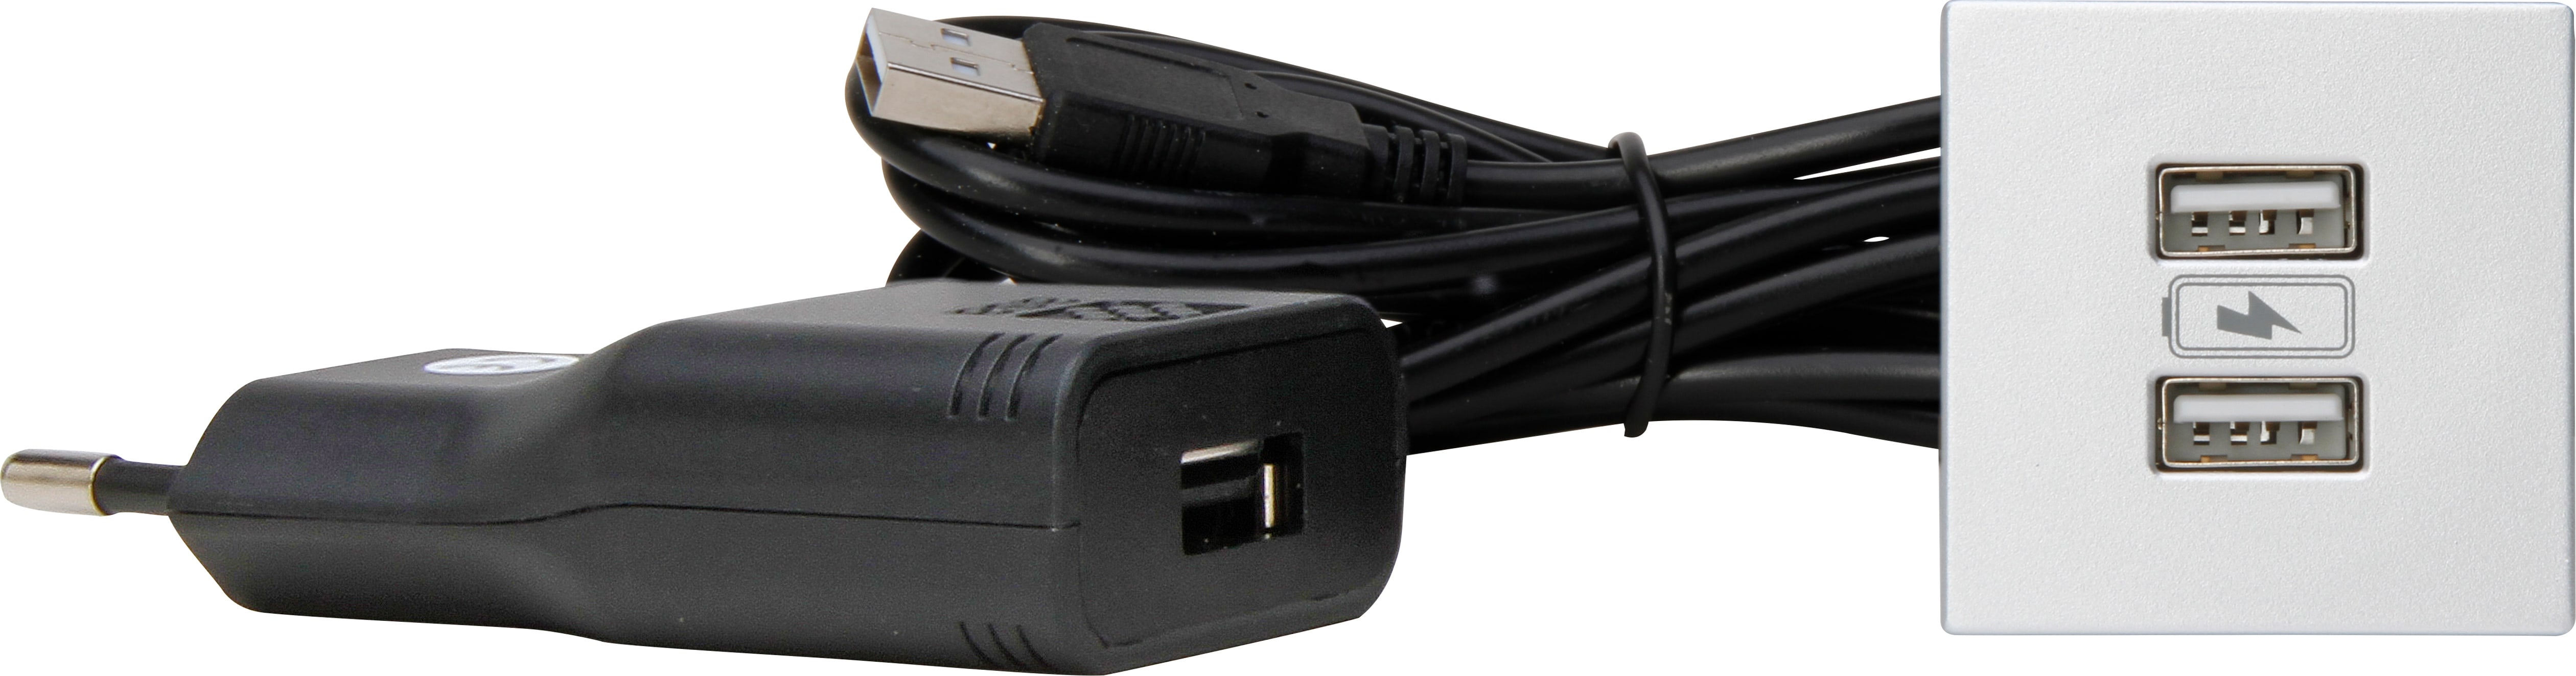 Kopp 939726015 VersaPICK USB Einbauset mit 2x USB, quadr., alu, Kunststoff